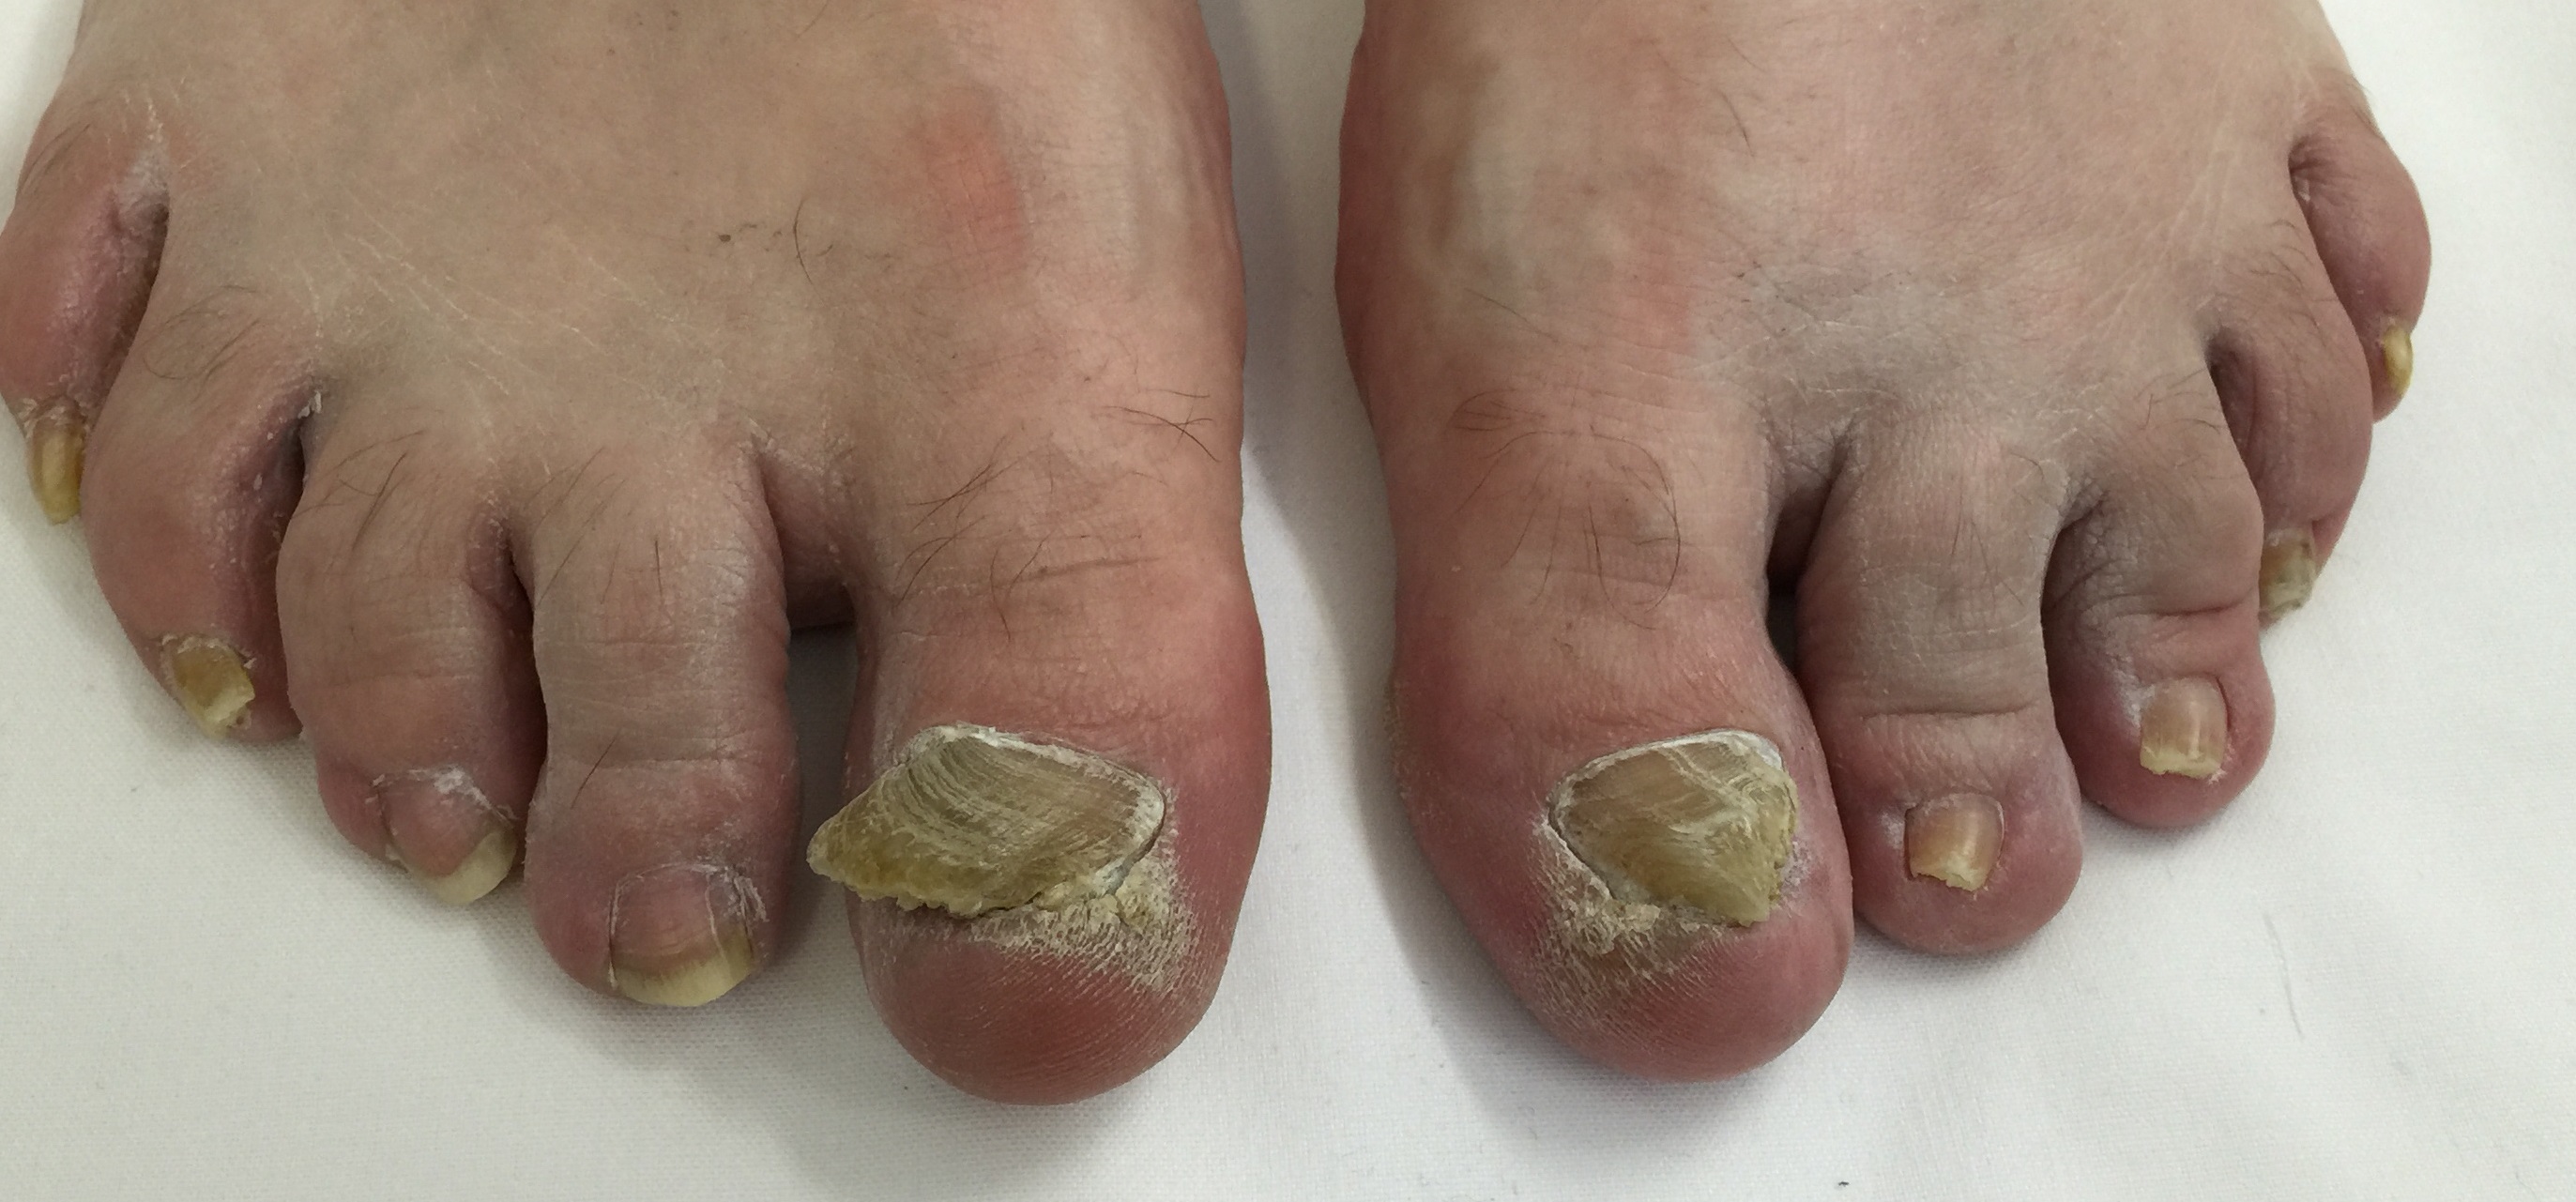 gomba toenails név kenőcs eszköz kezelés körömgomba után